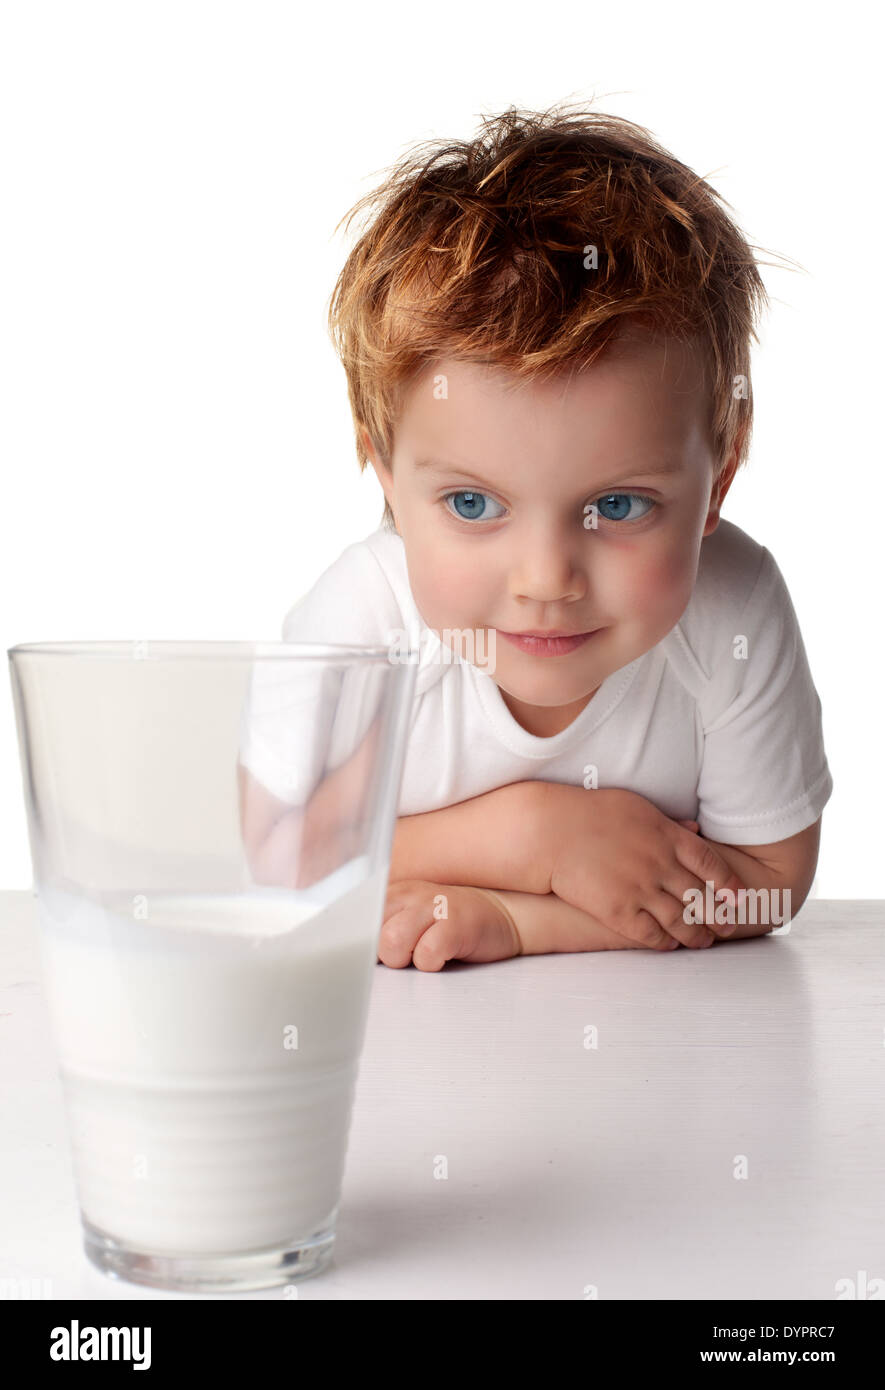 Child drinking milk Stock Photo